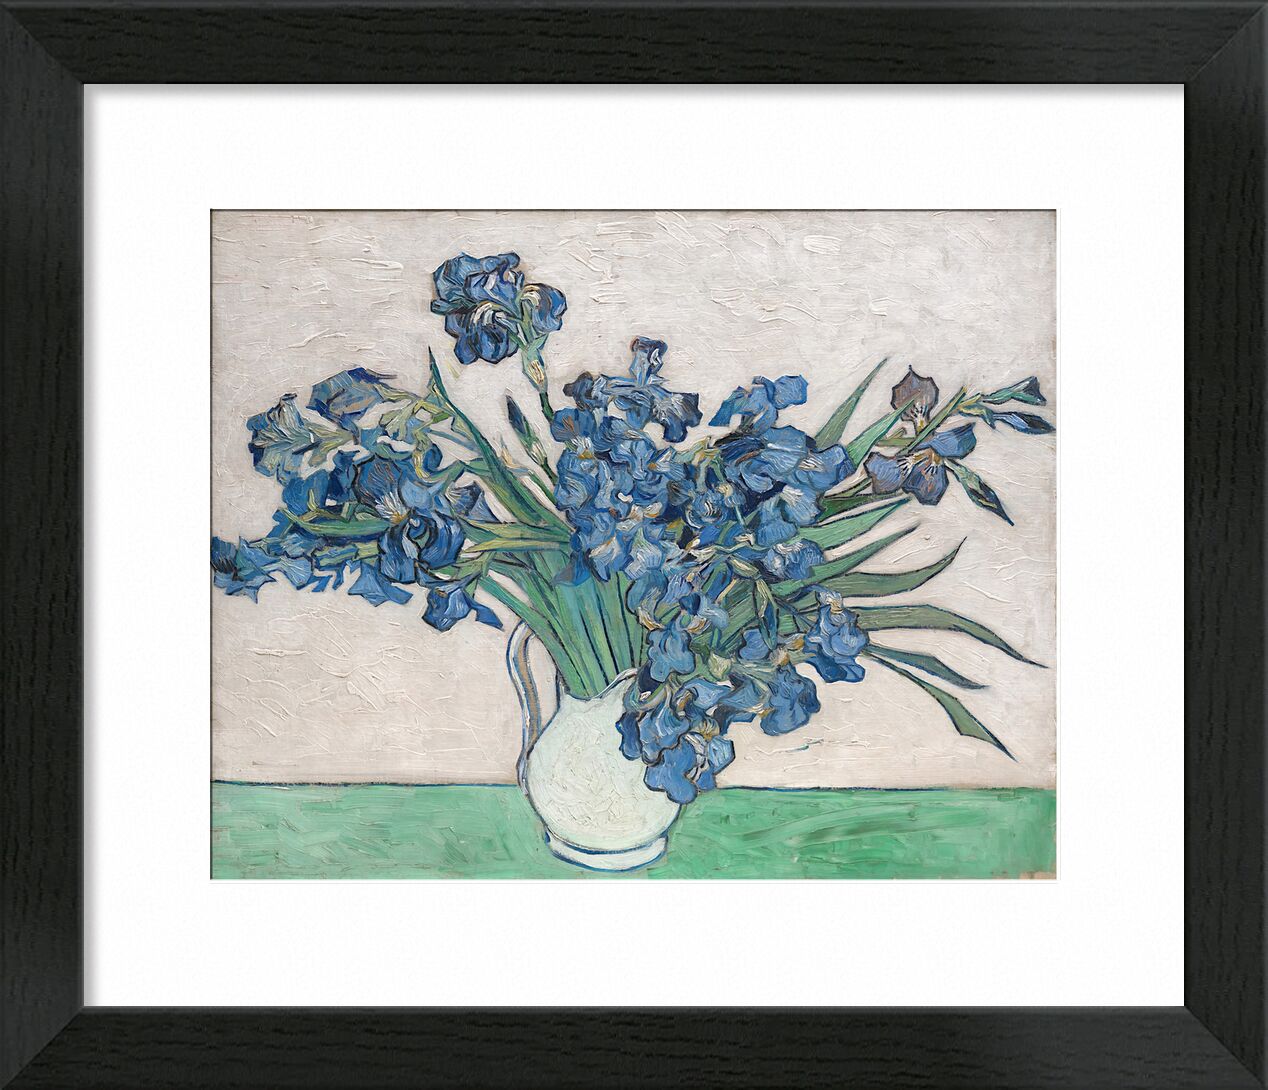 Irises - Van Gogh von Bildende Kunst, Prodi Art, Van gogh, Malerei, Iris, Stillleben, Blumen, Bündel, Blumenstrauß